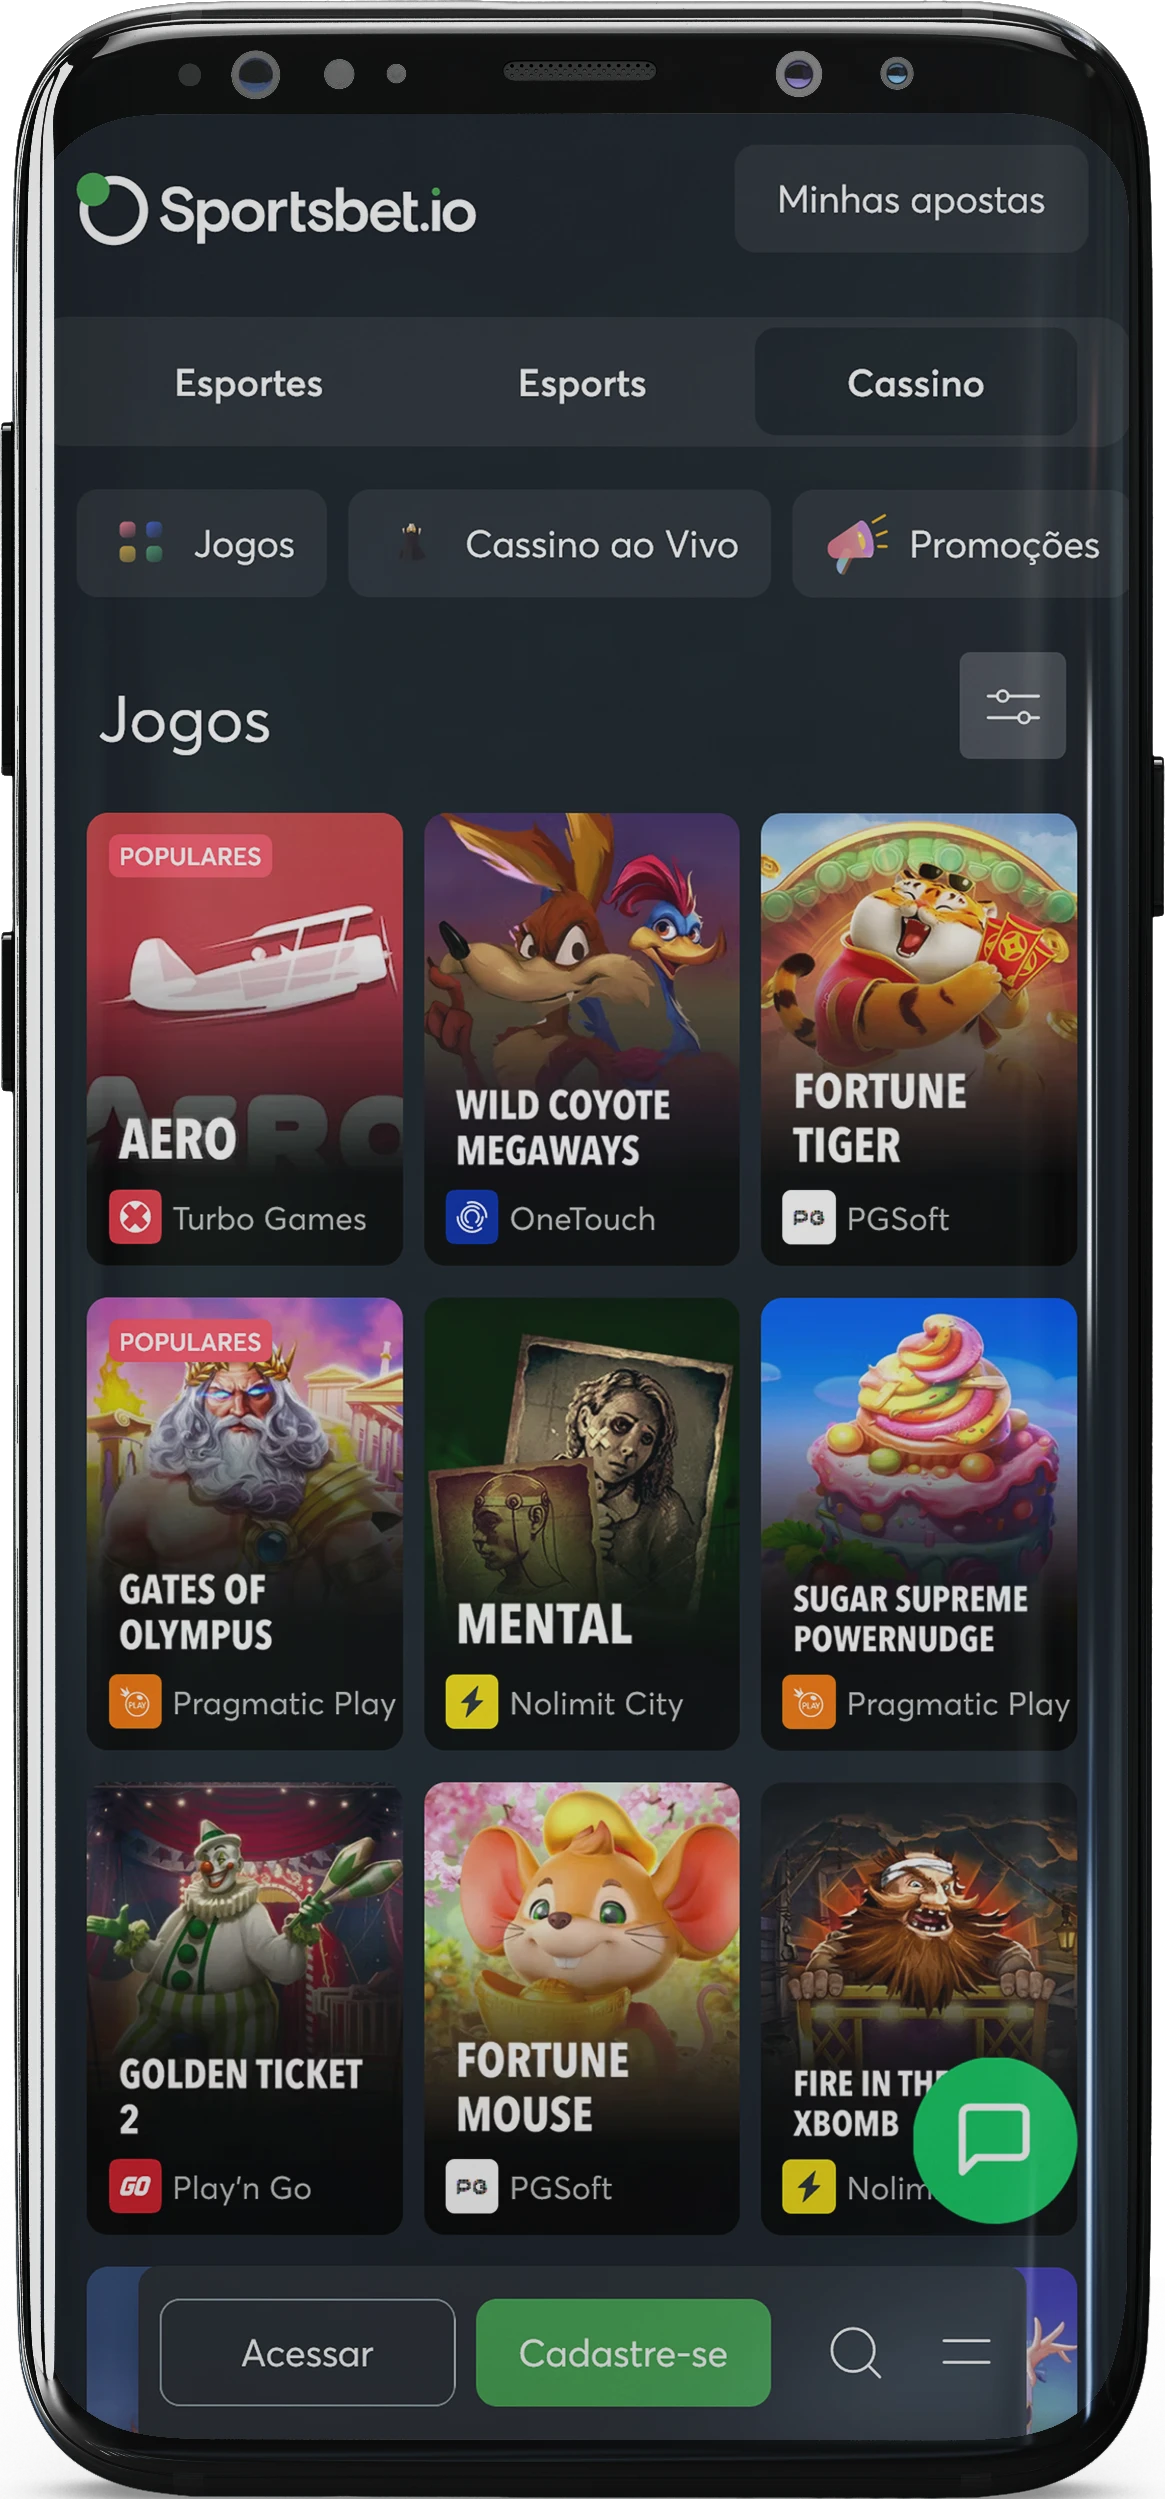 Captura de tela dos jogos de cassino no aplicativo Sportsbet io